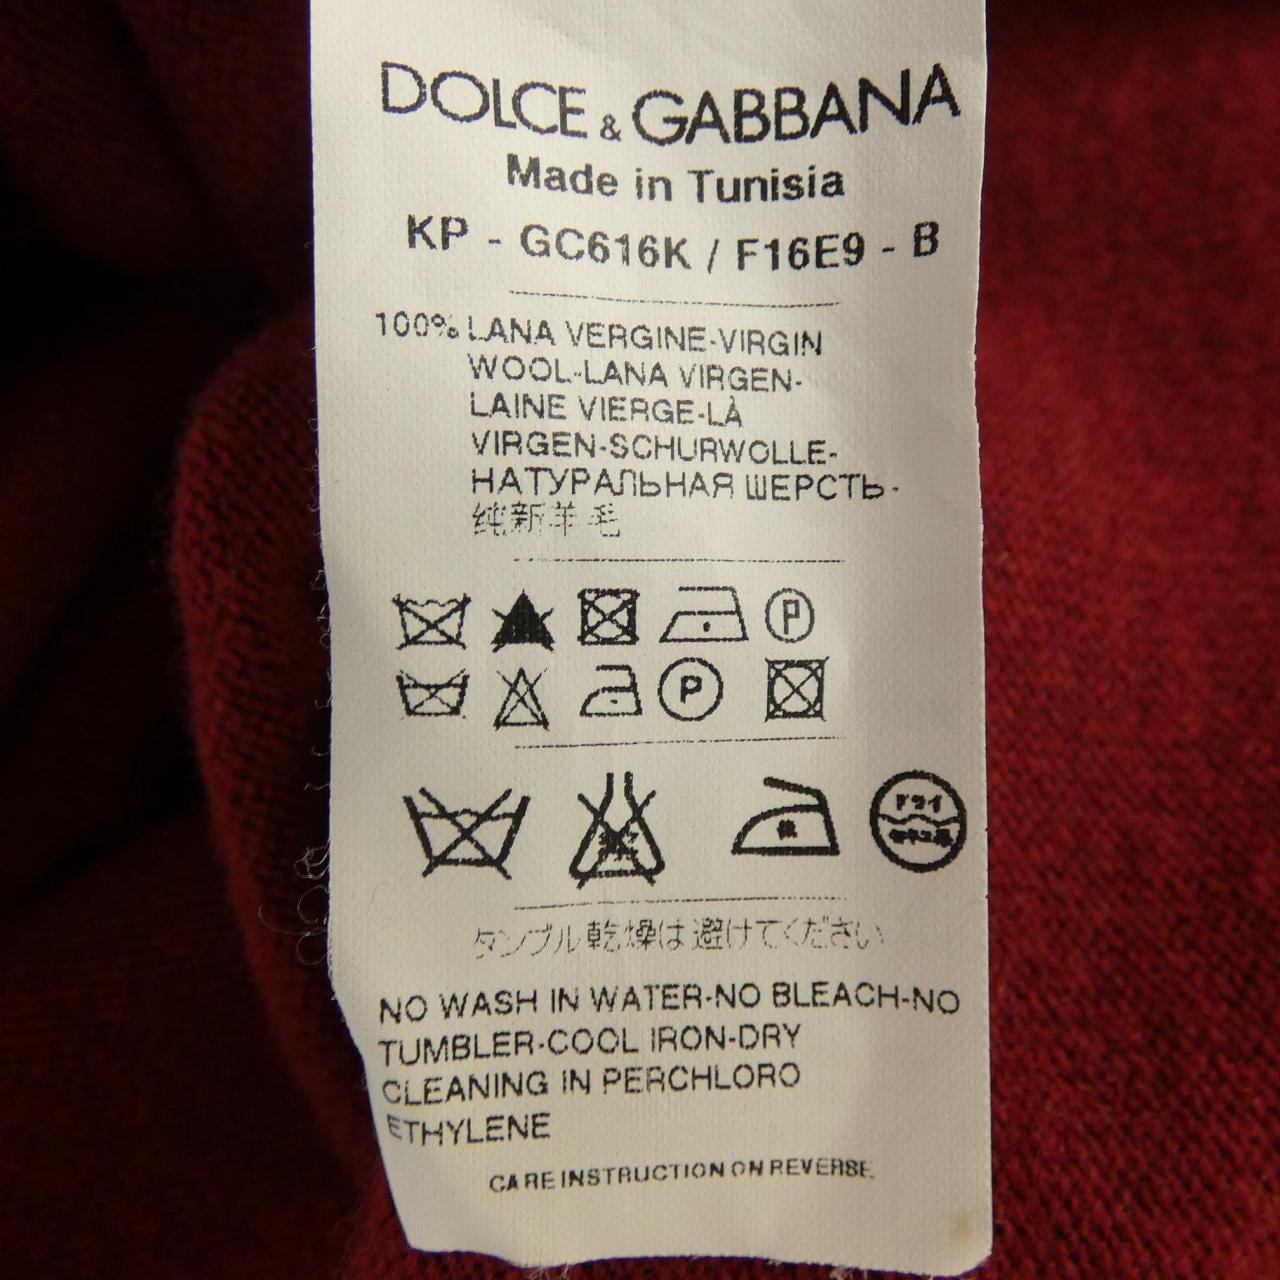 DOLCE&GABBANA DOLCE &GABBANA Knitwear